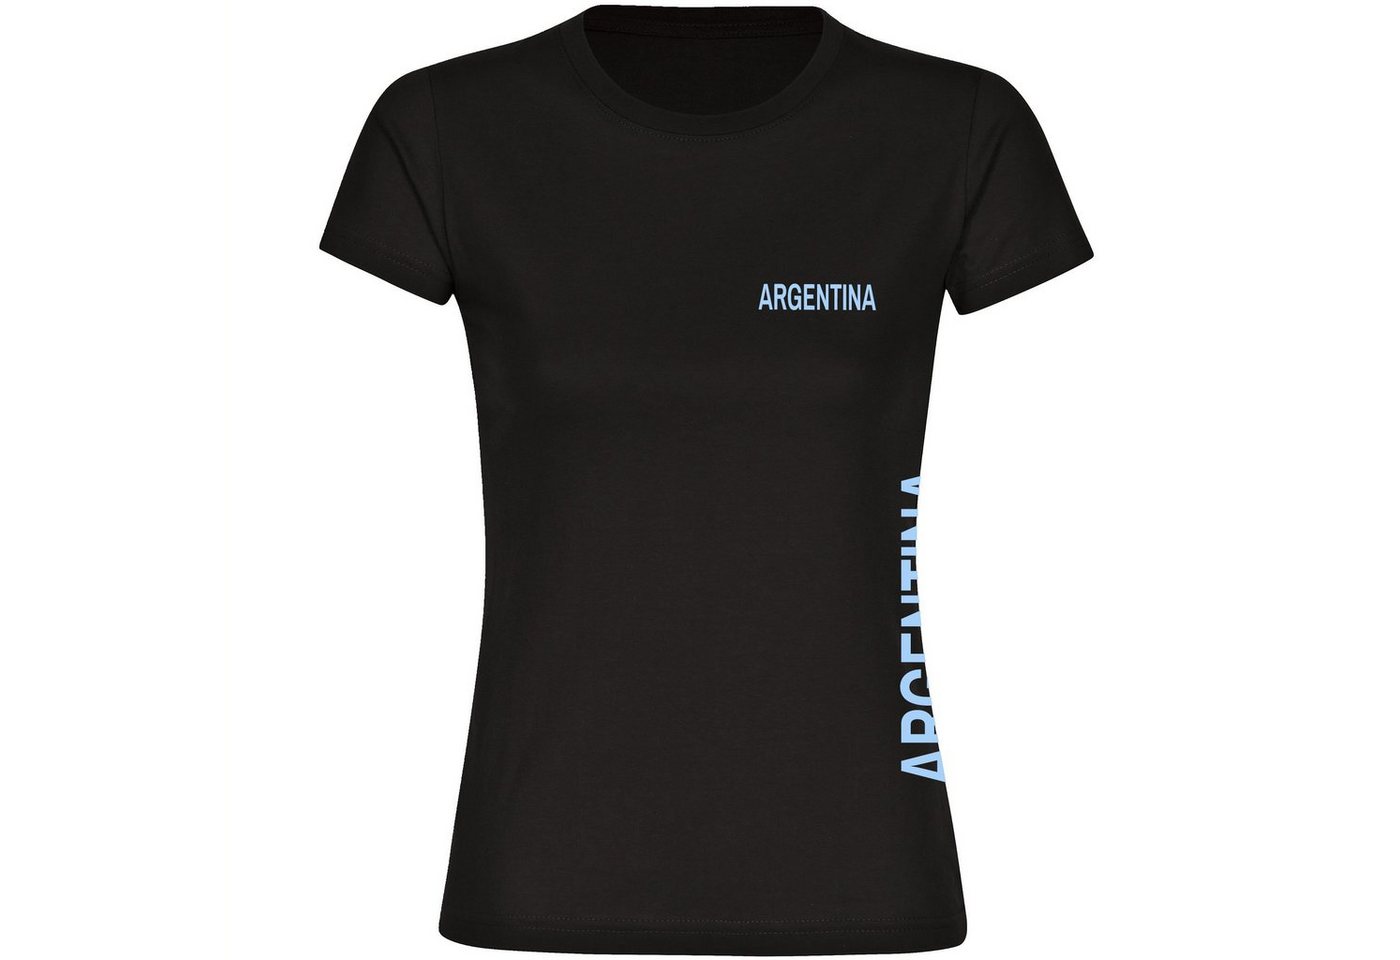 multifanshop T-Shirt Damen Argentina - Brust & Seite - Frauen von multifanshop